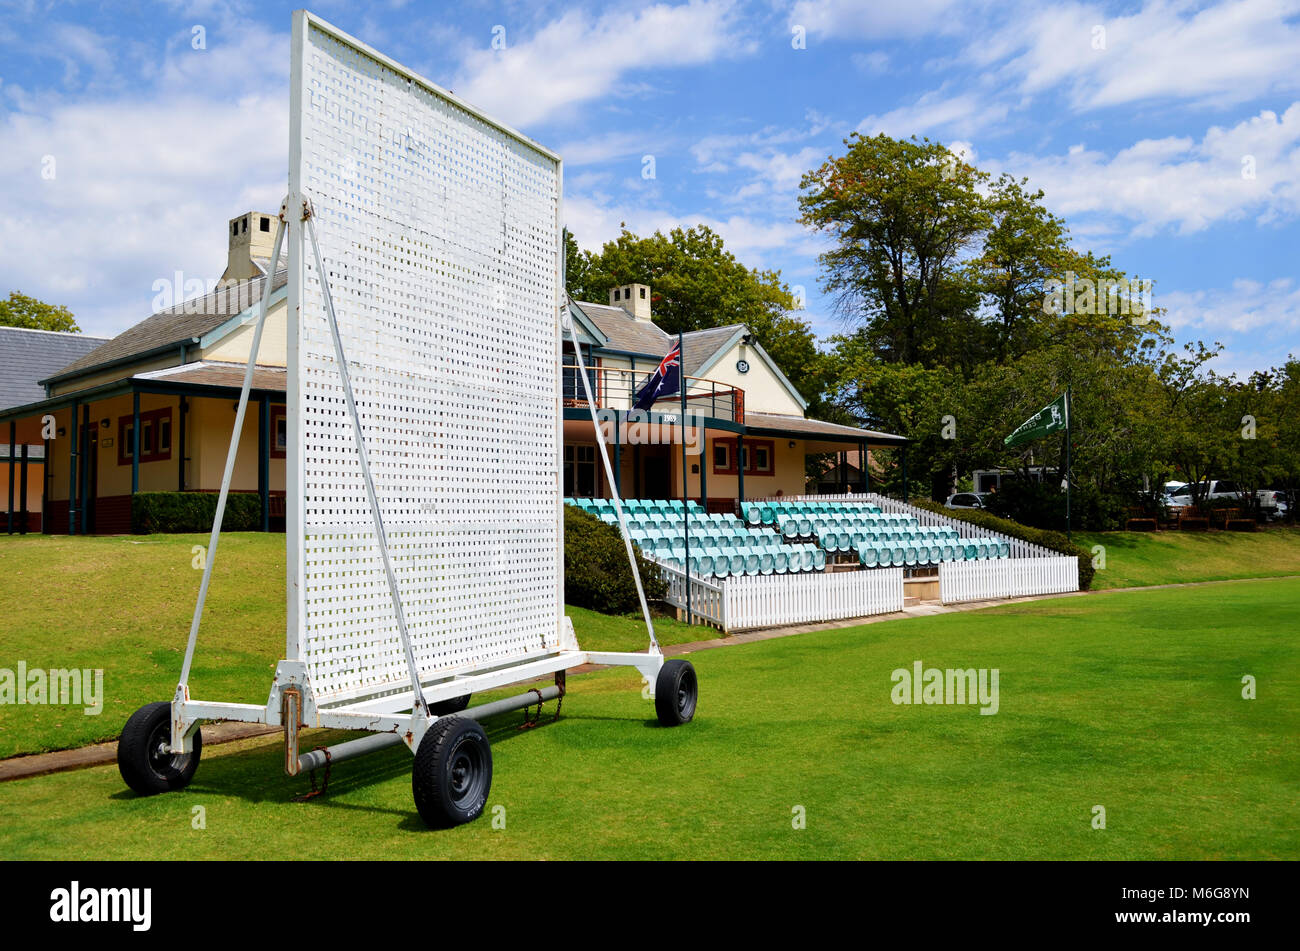 Bradman oval cricket pavilion Bowral NSW Australia Stock Photo